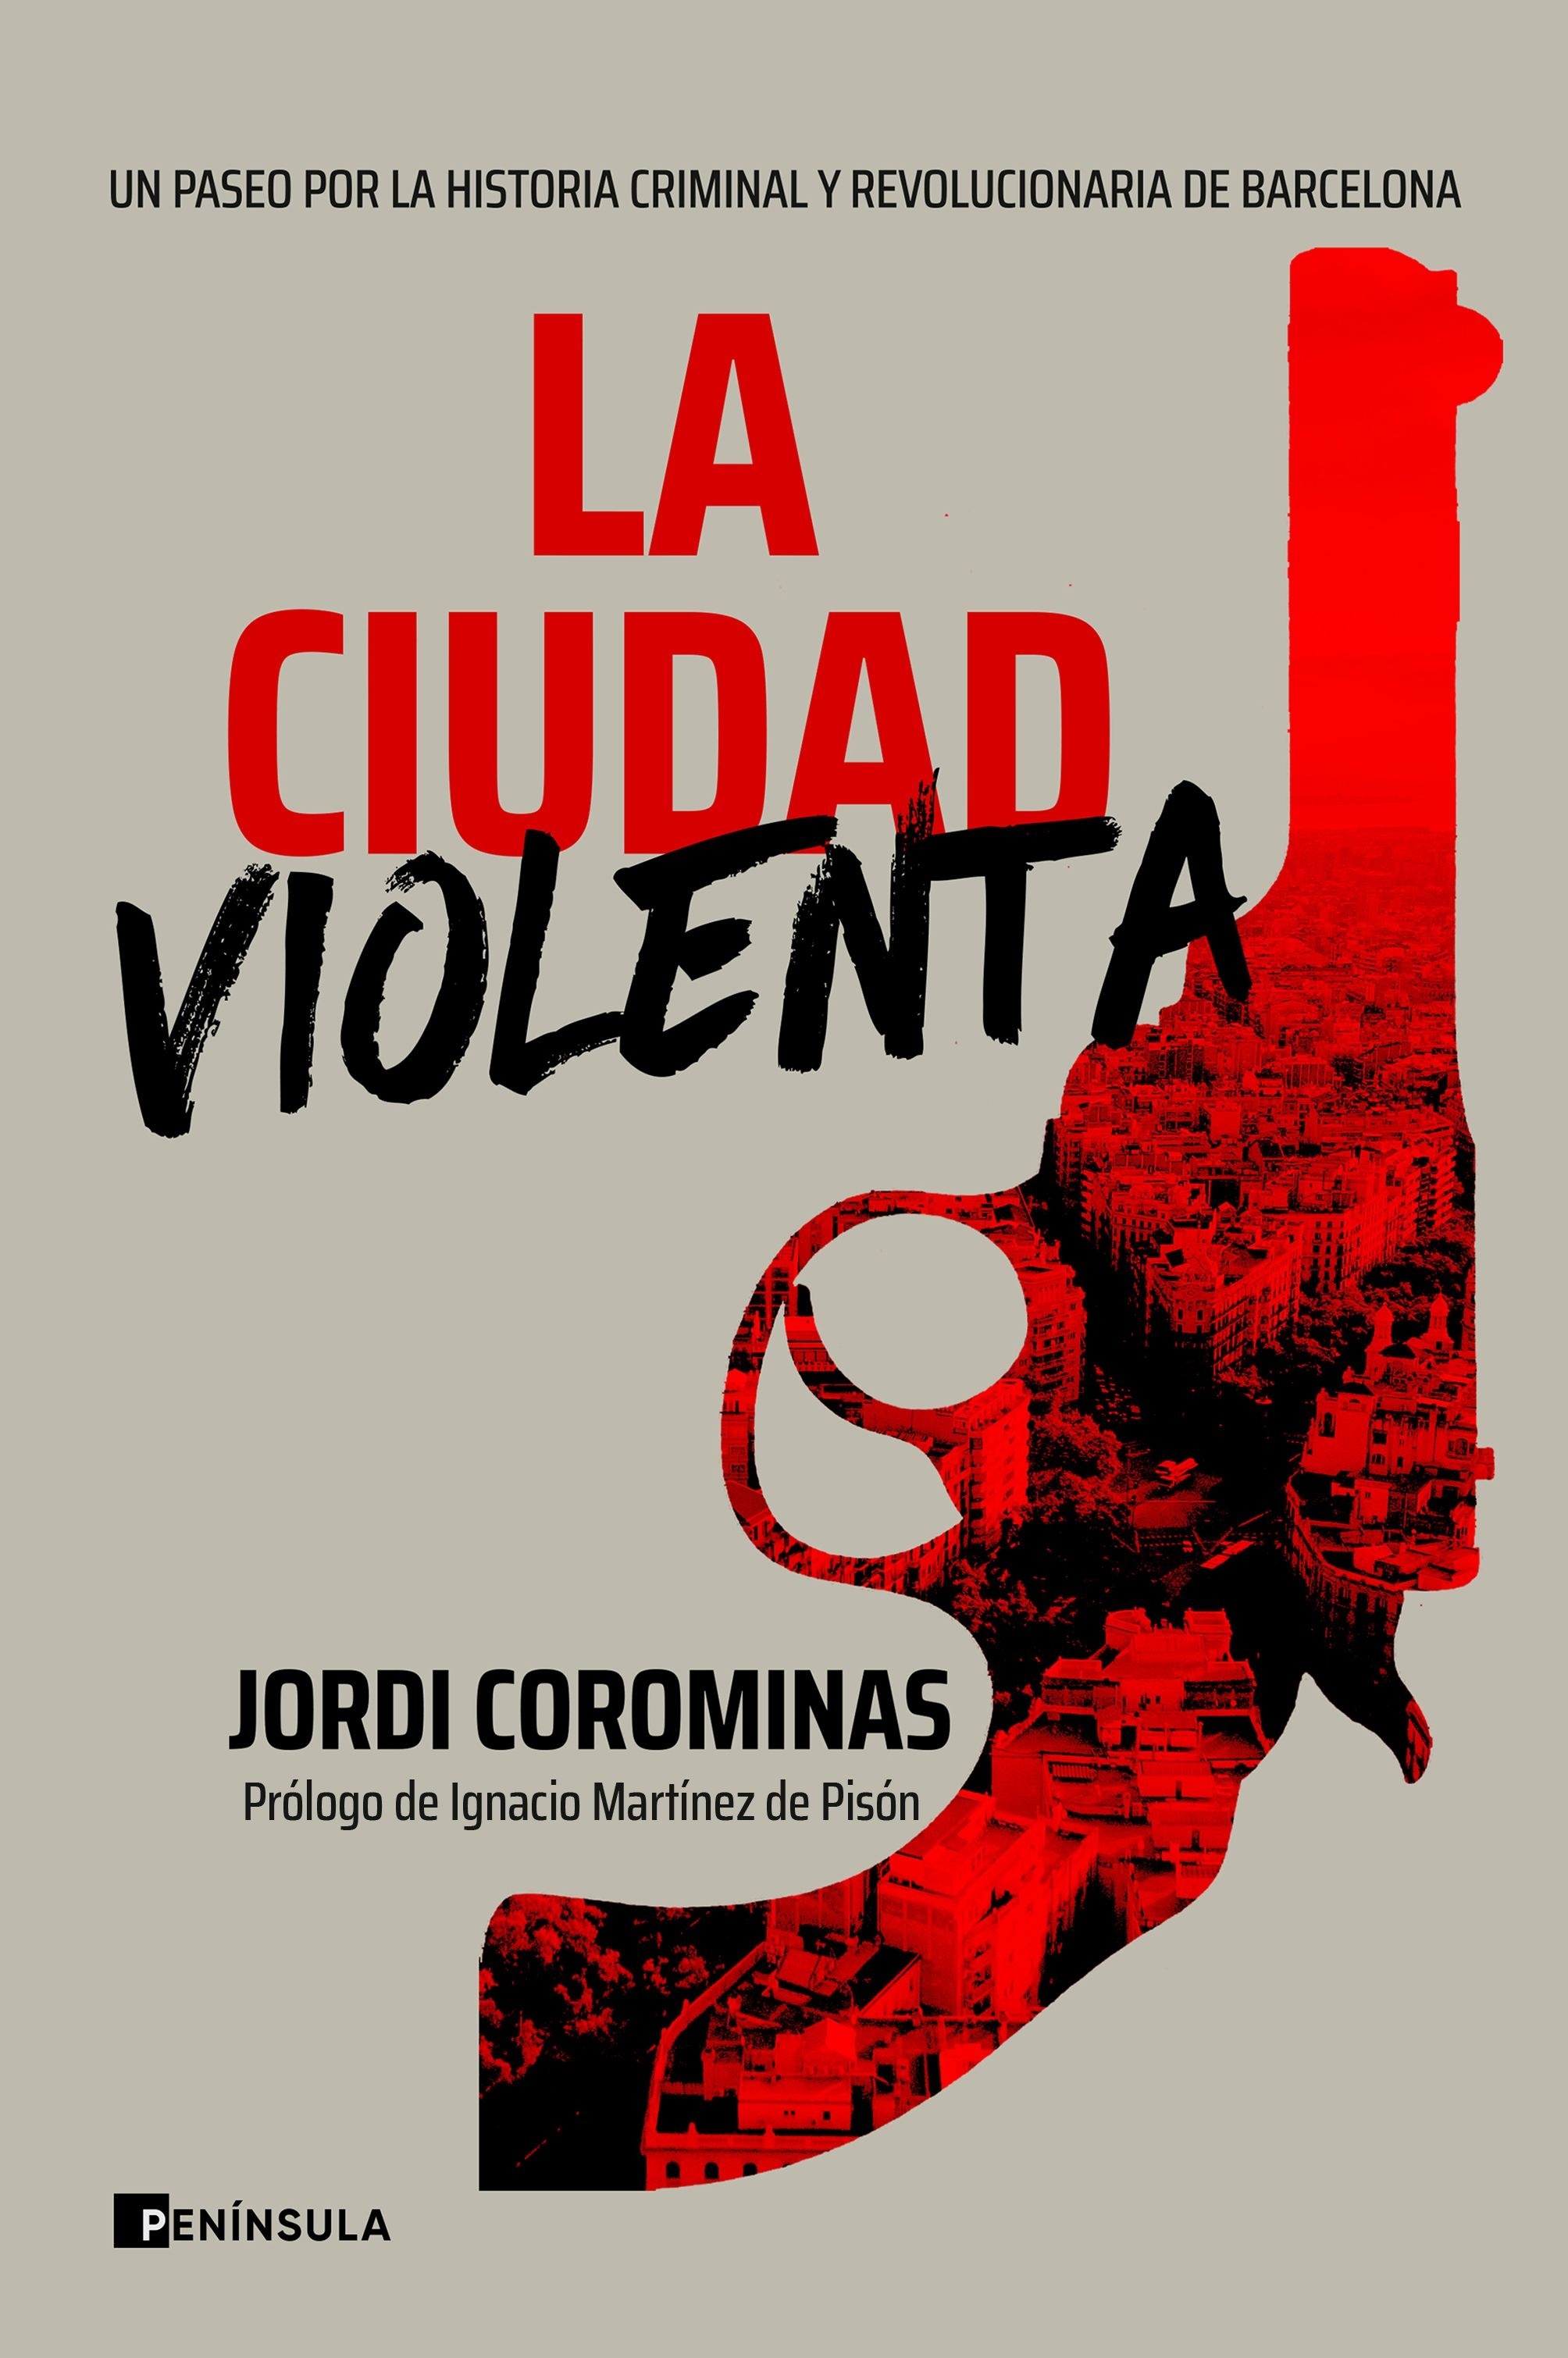 Ciudad violenta, La "Un paseo por la historia criminal y revolucionaria de Barcelona"